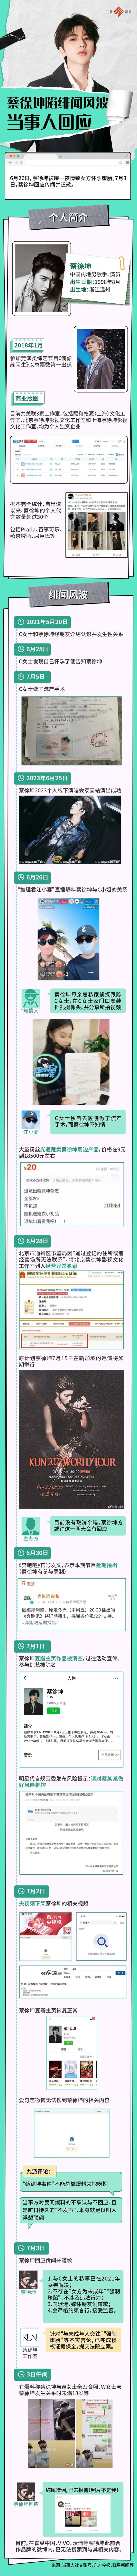 北京广告协会删除蔡某某风险提示 为什么删除怎么回事